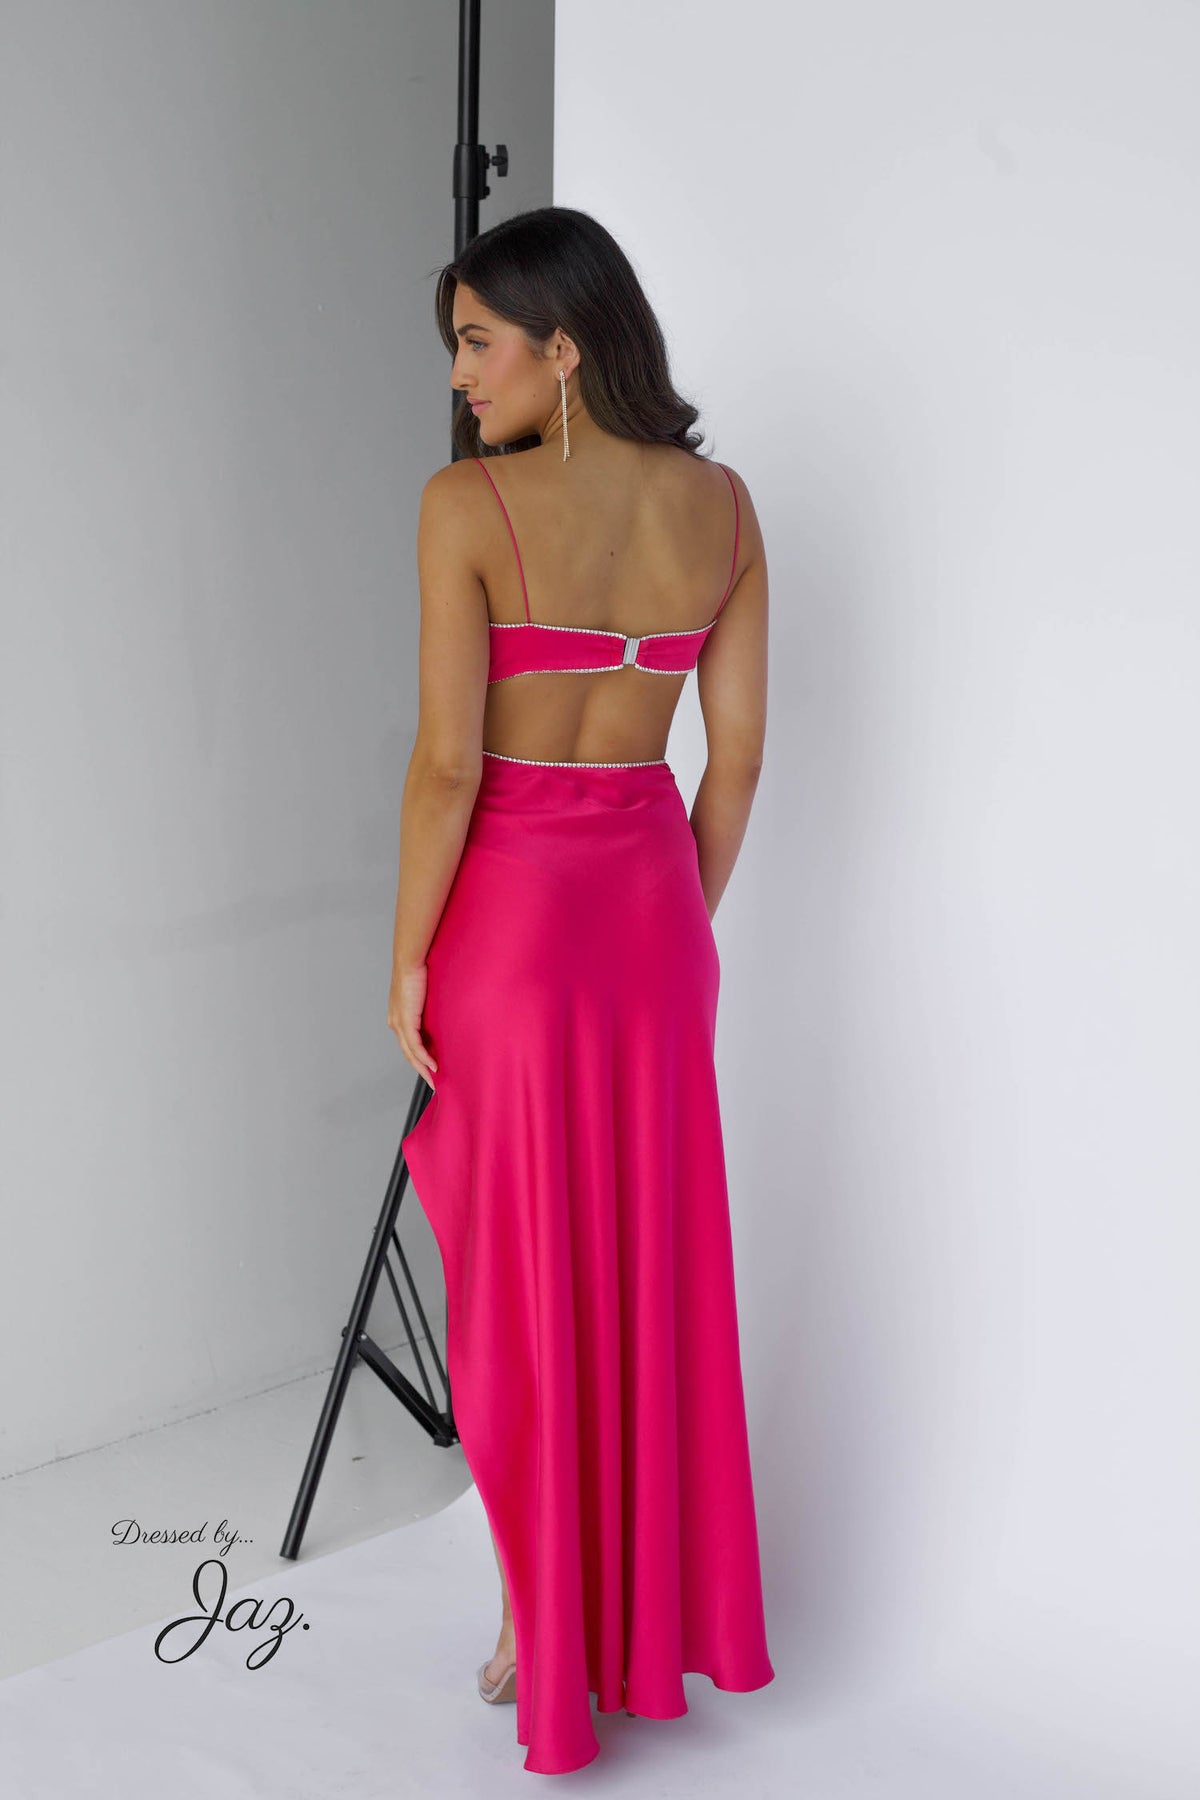 Symic Crystalline Luna Dress - Pink